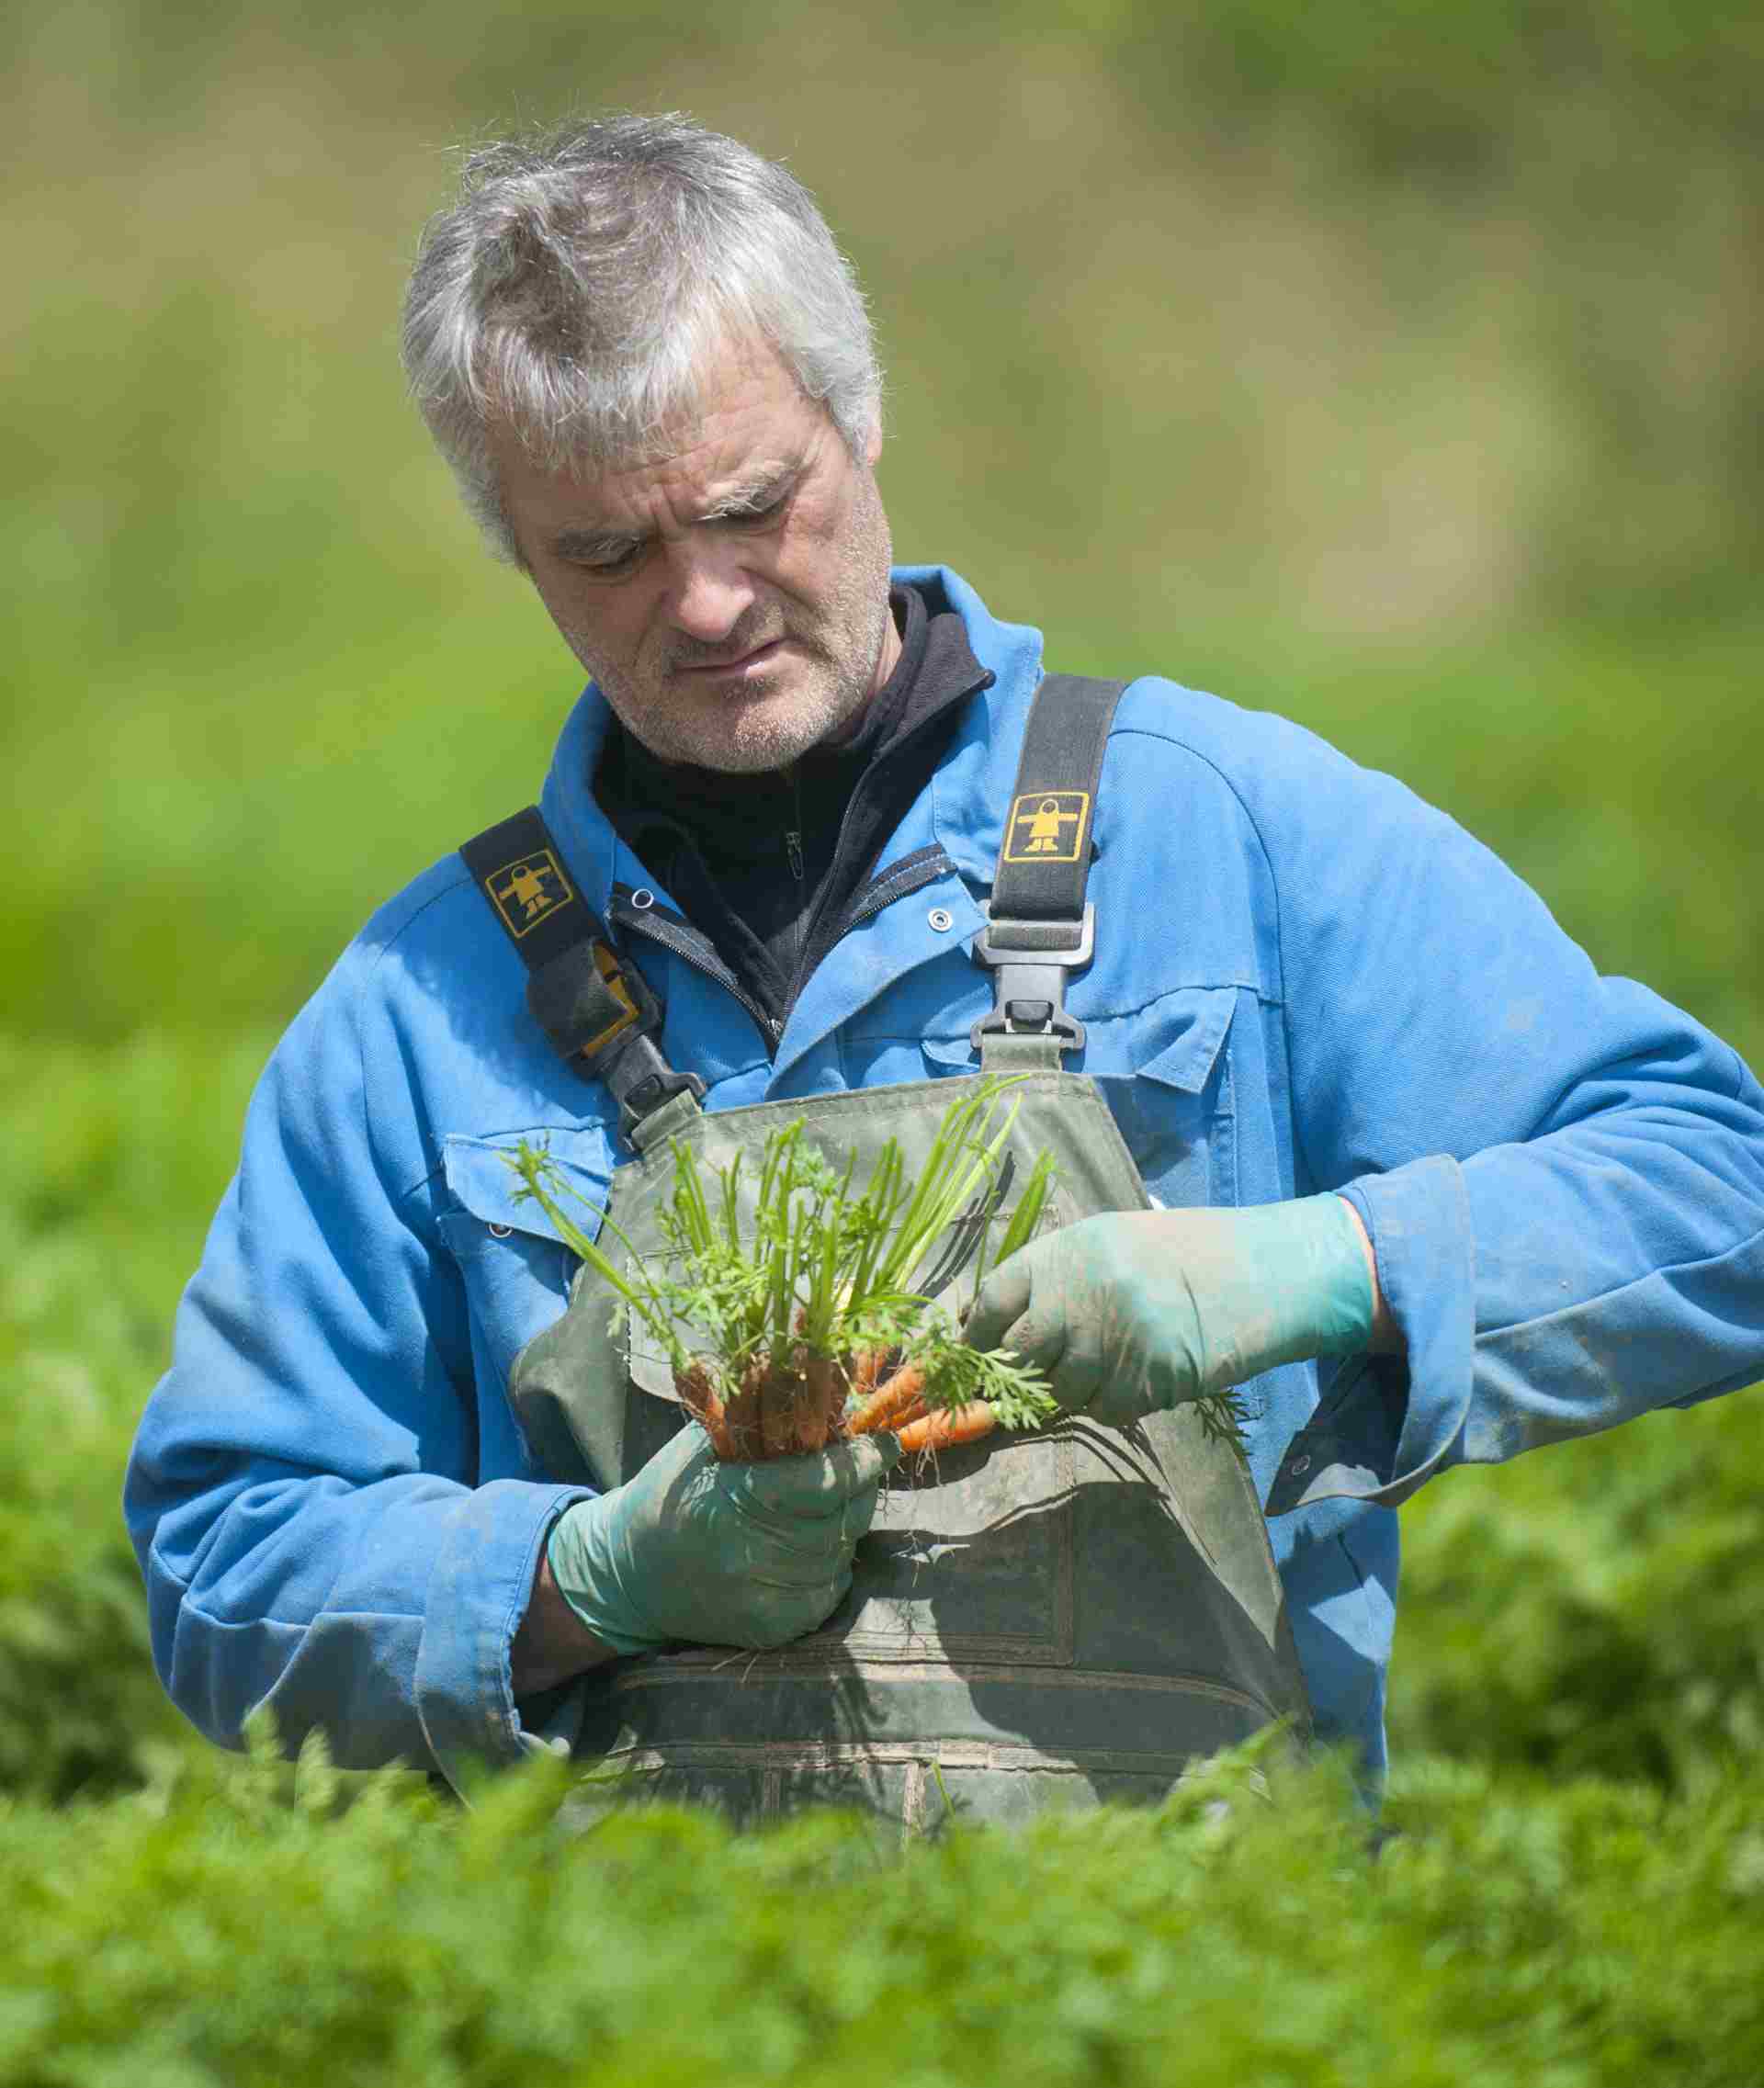 producteur de la coopérative légumière Sica en train de récolter des carottes